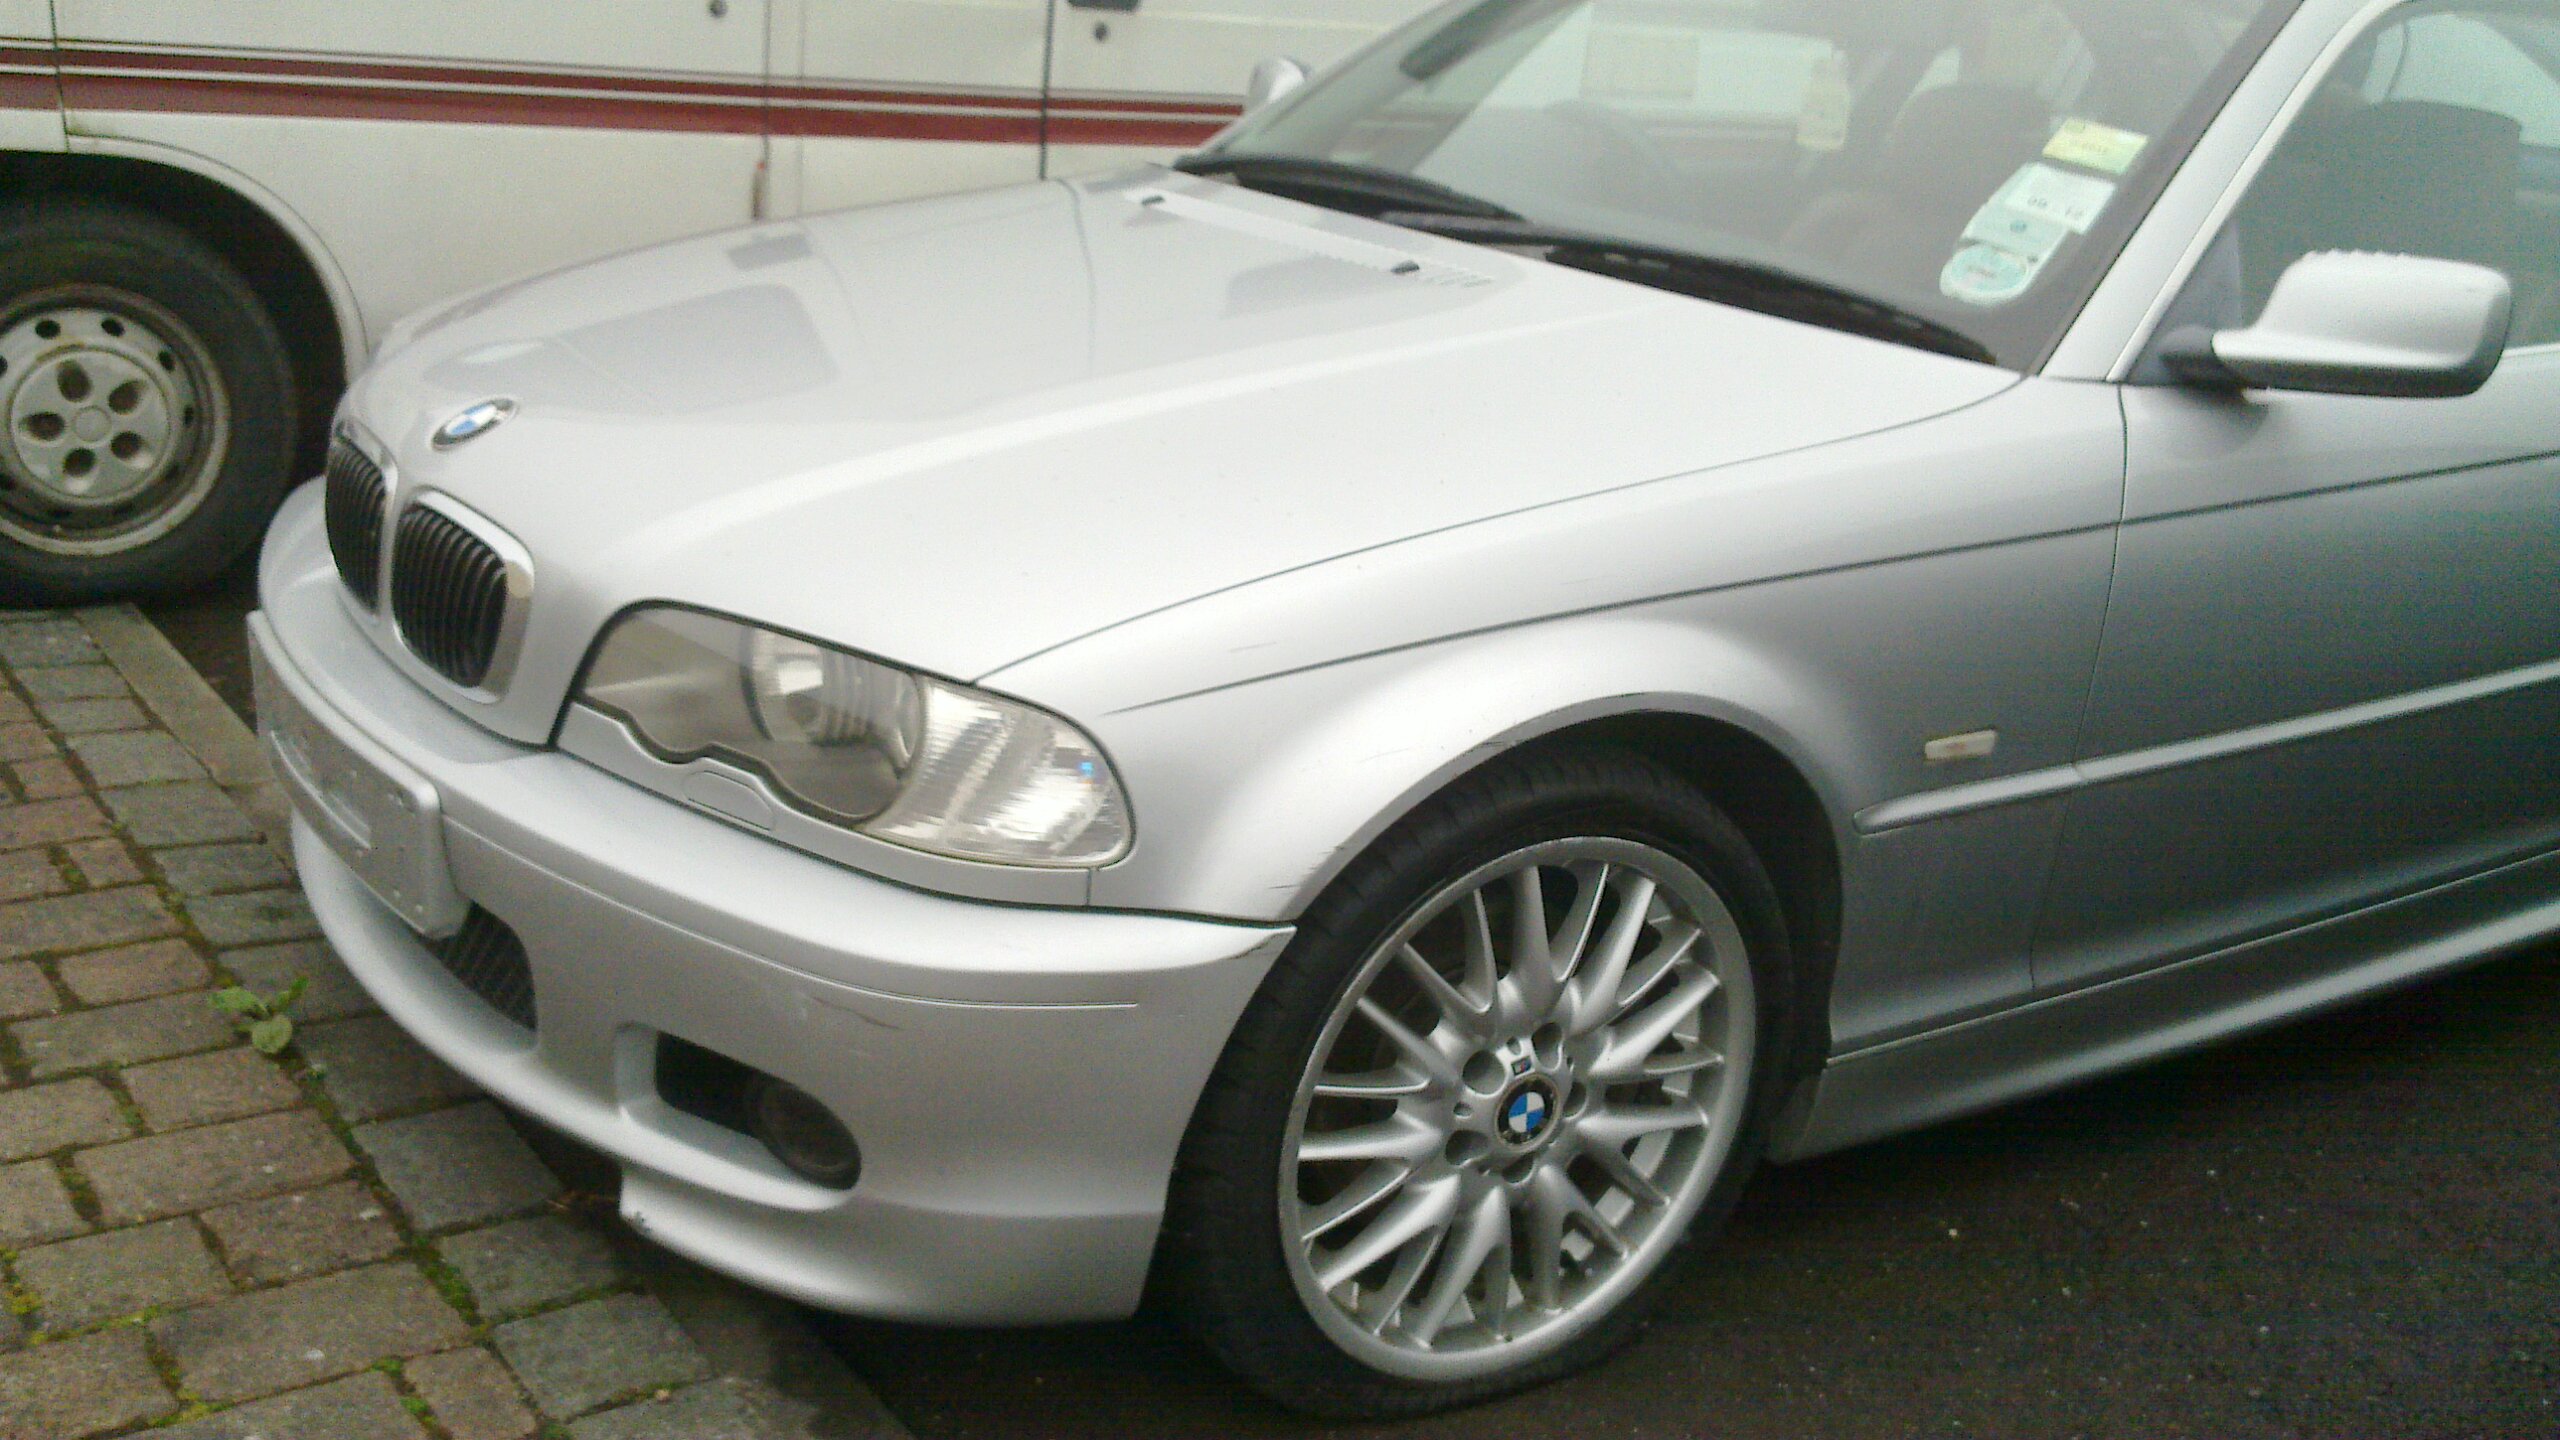 BMW Sport Zobacz temat Starscream >> BMW E46 330Ci